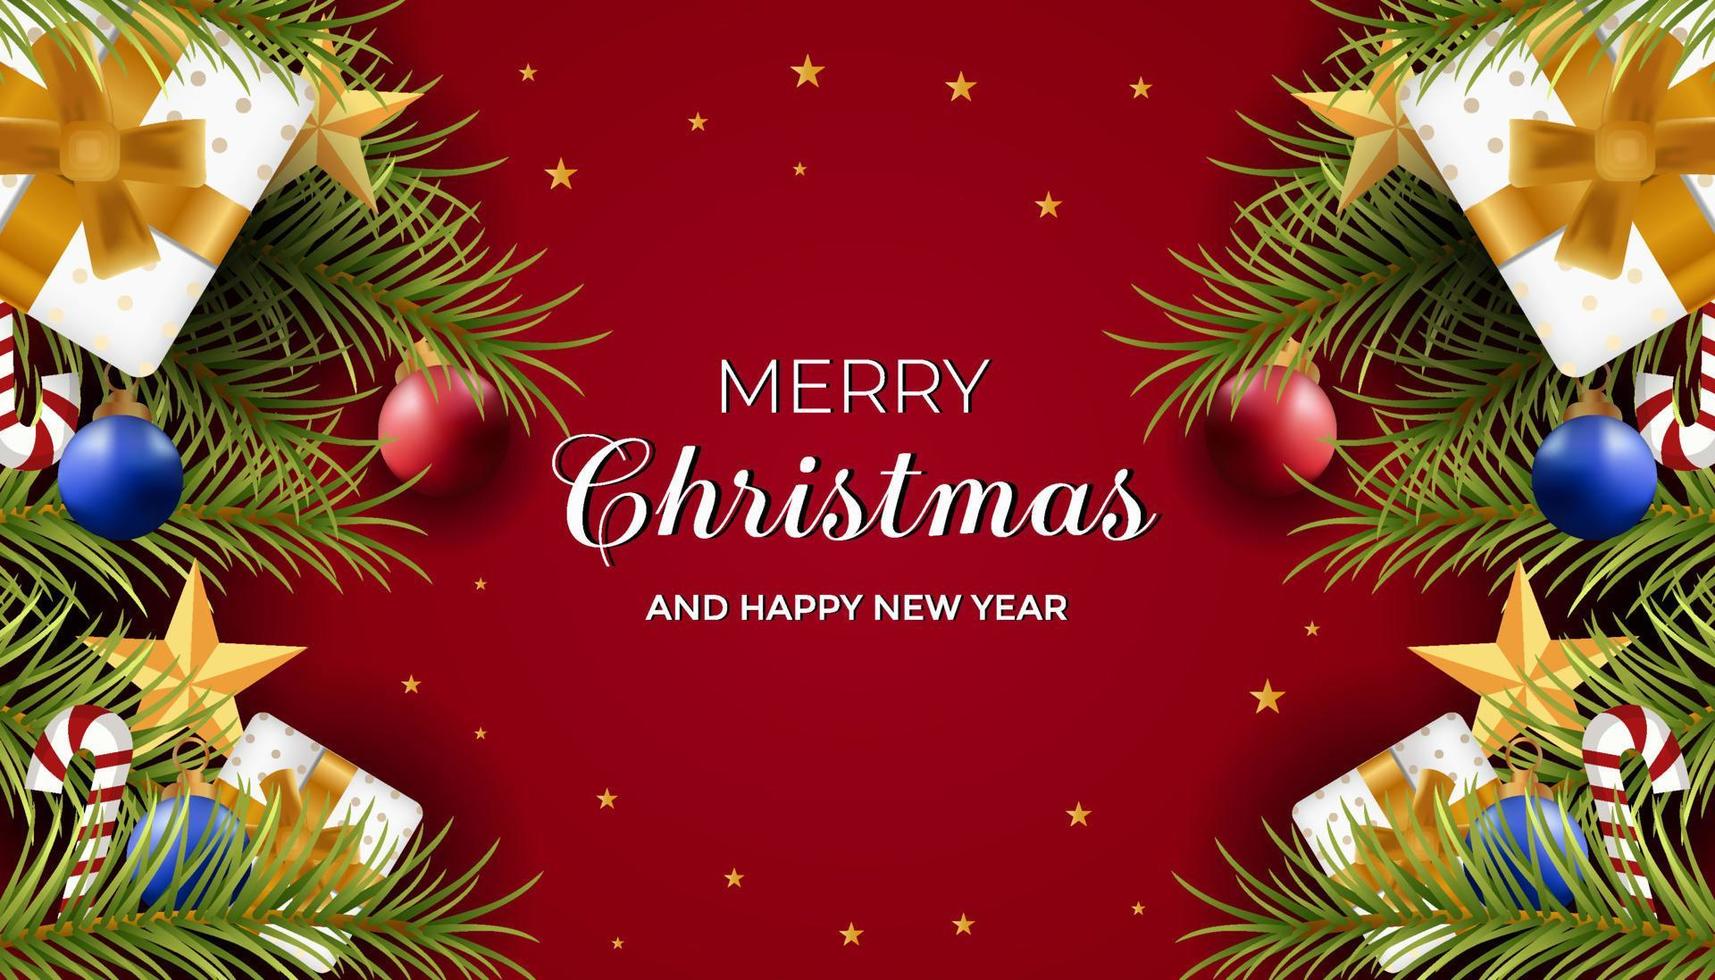 realistischer Hintergrund für Weihnachten und guten Rutsch ins Neue Jahr mit Ornament-Geschenkbox, Sternen, Süßigkeiten, Kiefernblatt und Lampe vektor